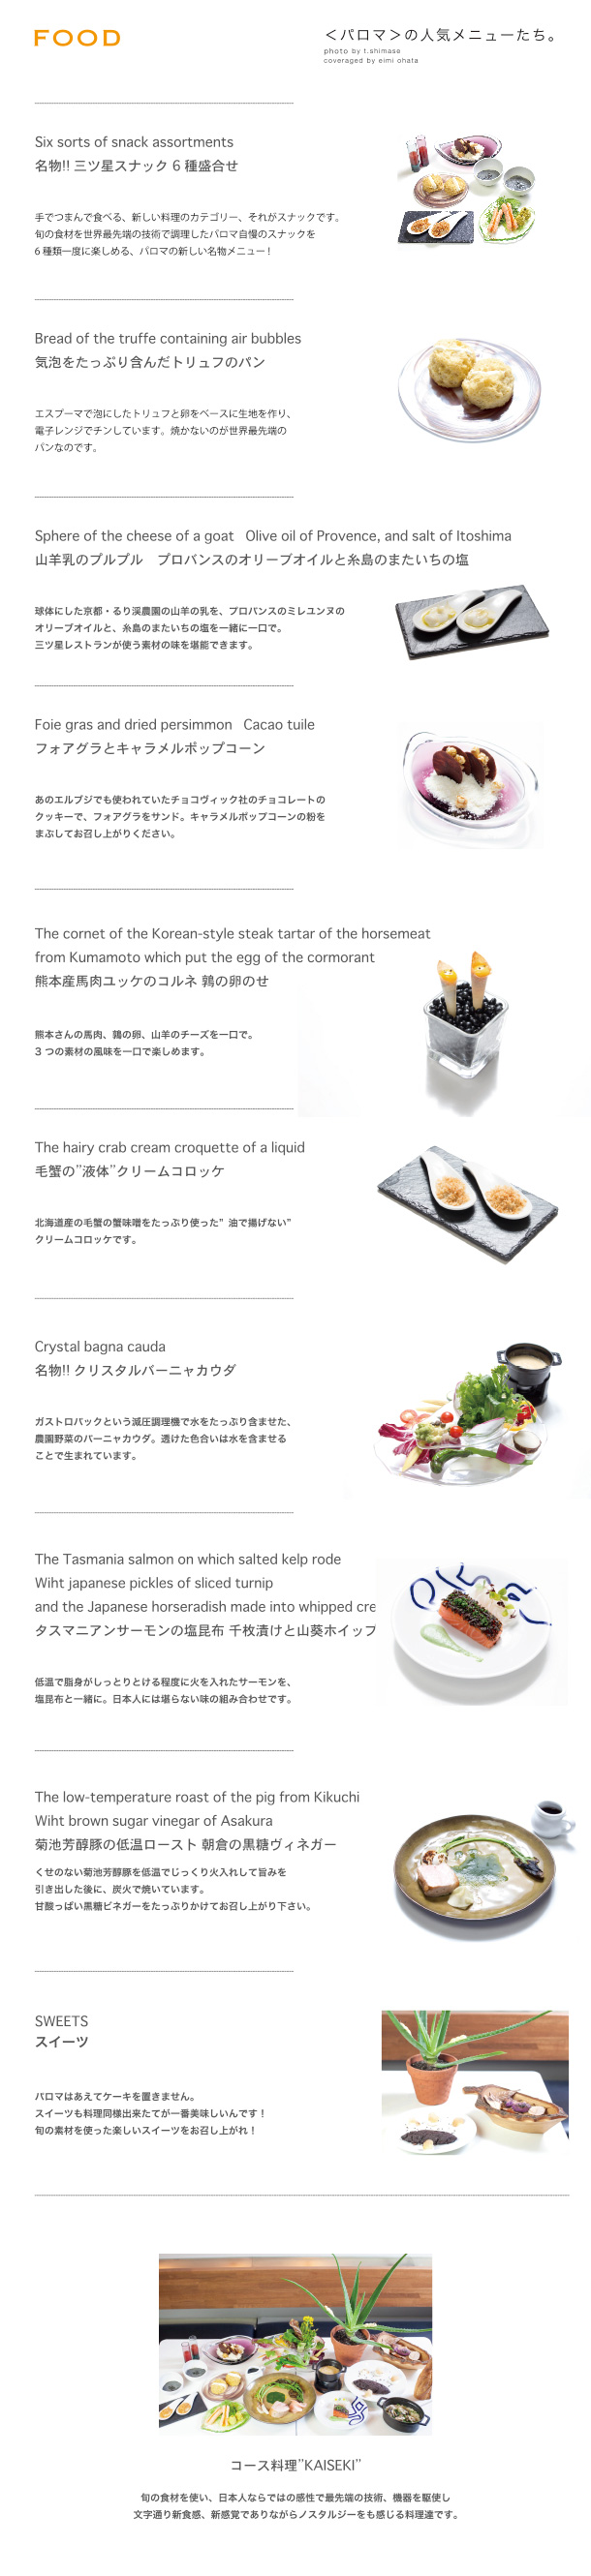 menu20140120.jpg